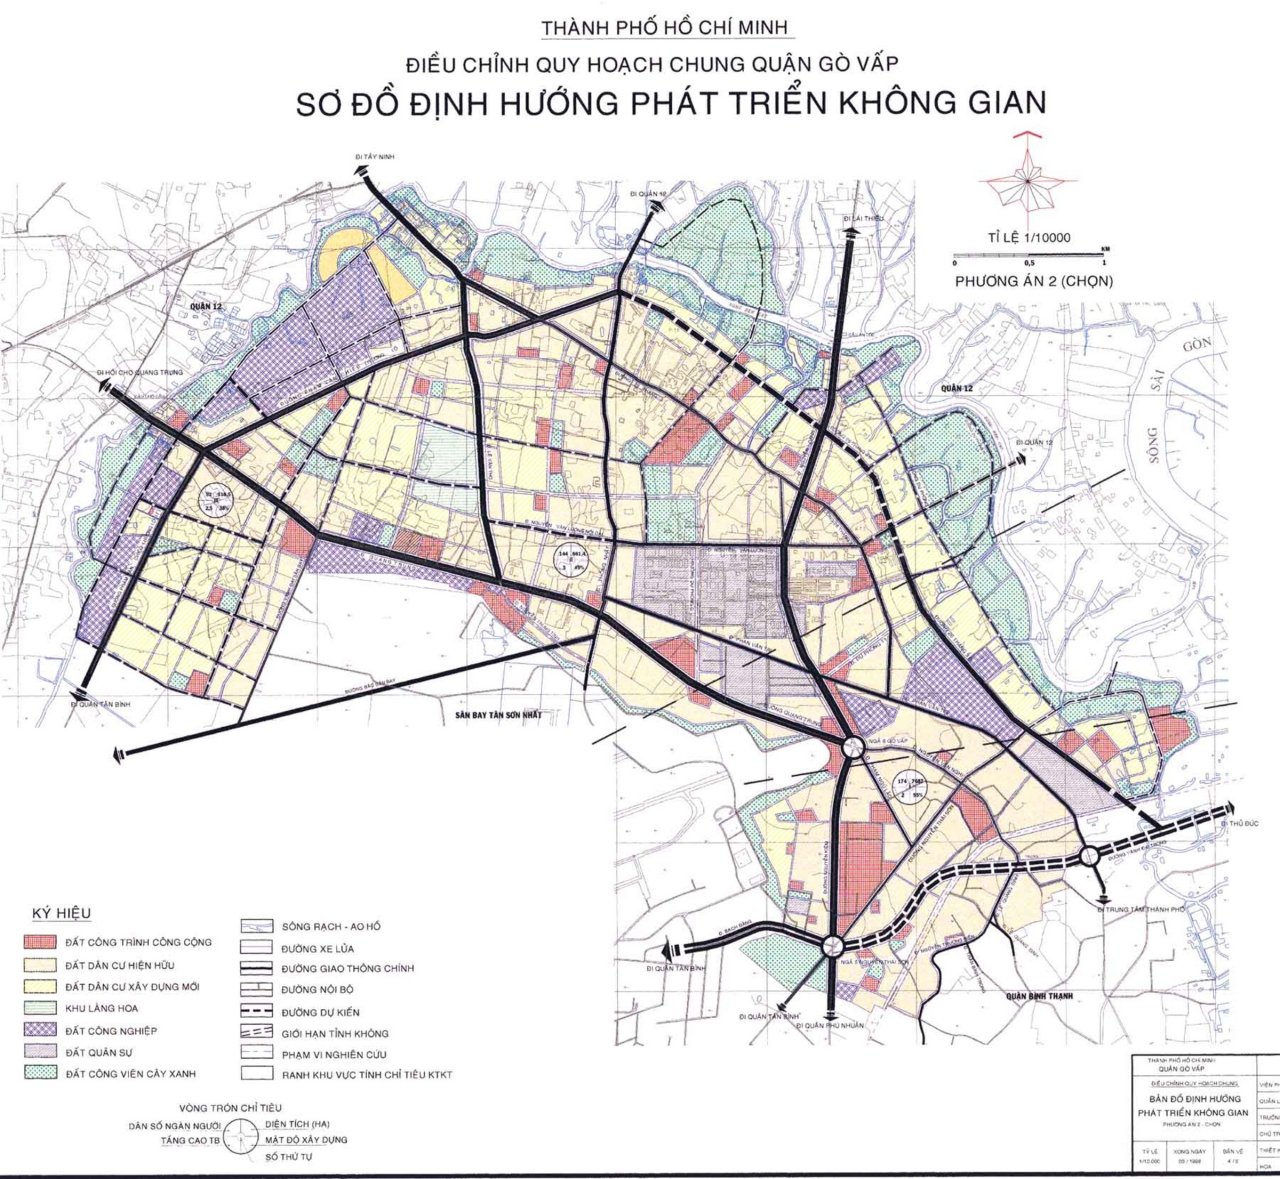 Bản đồ quy hoạch phát triển không gian Quận Gò Vấp